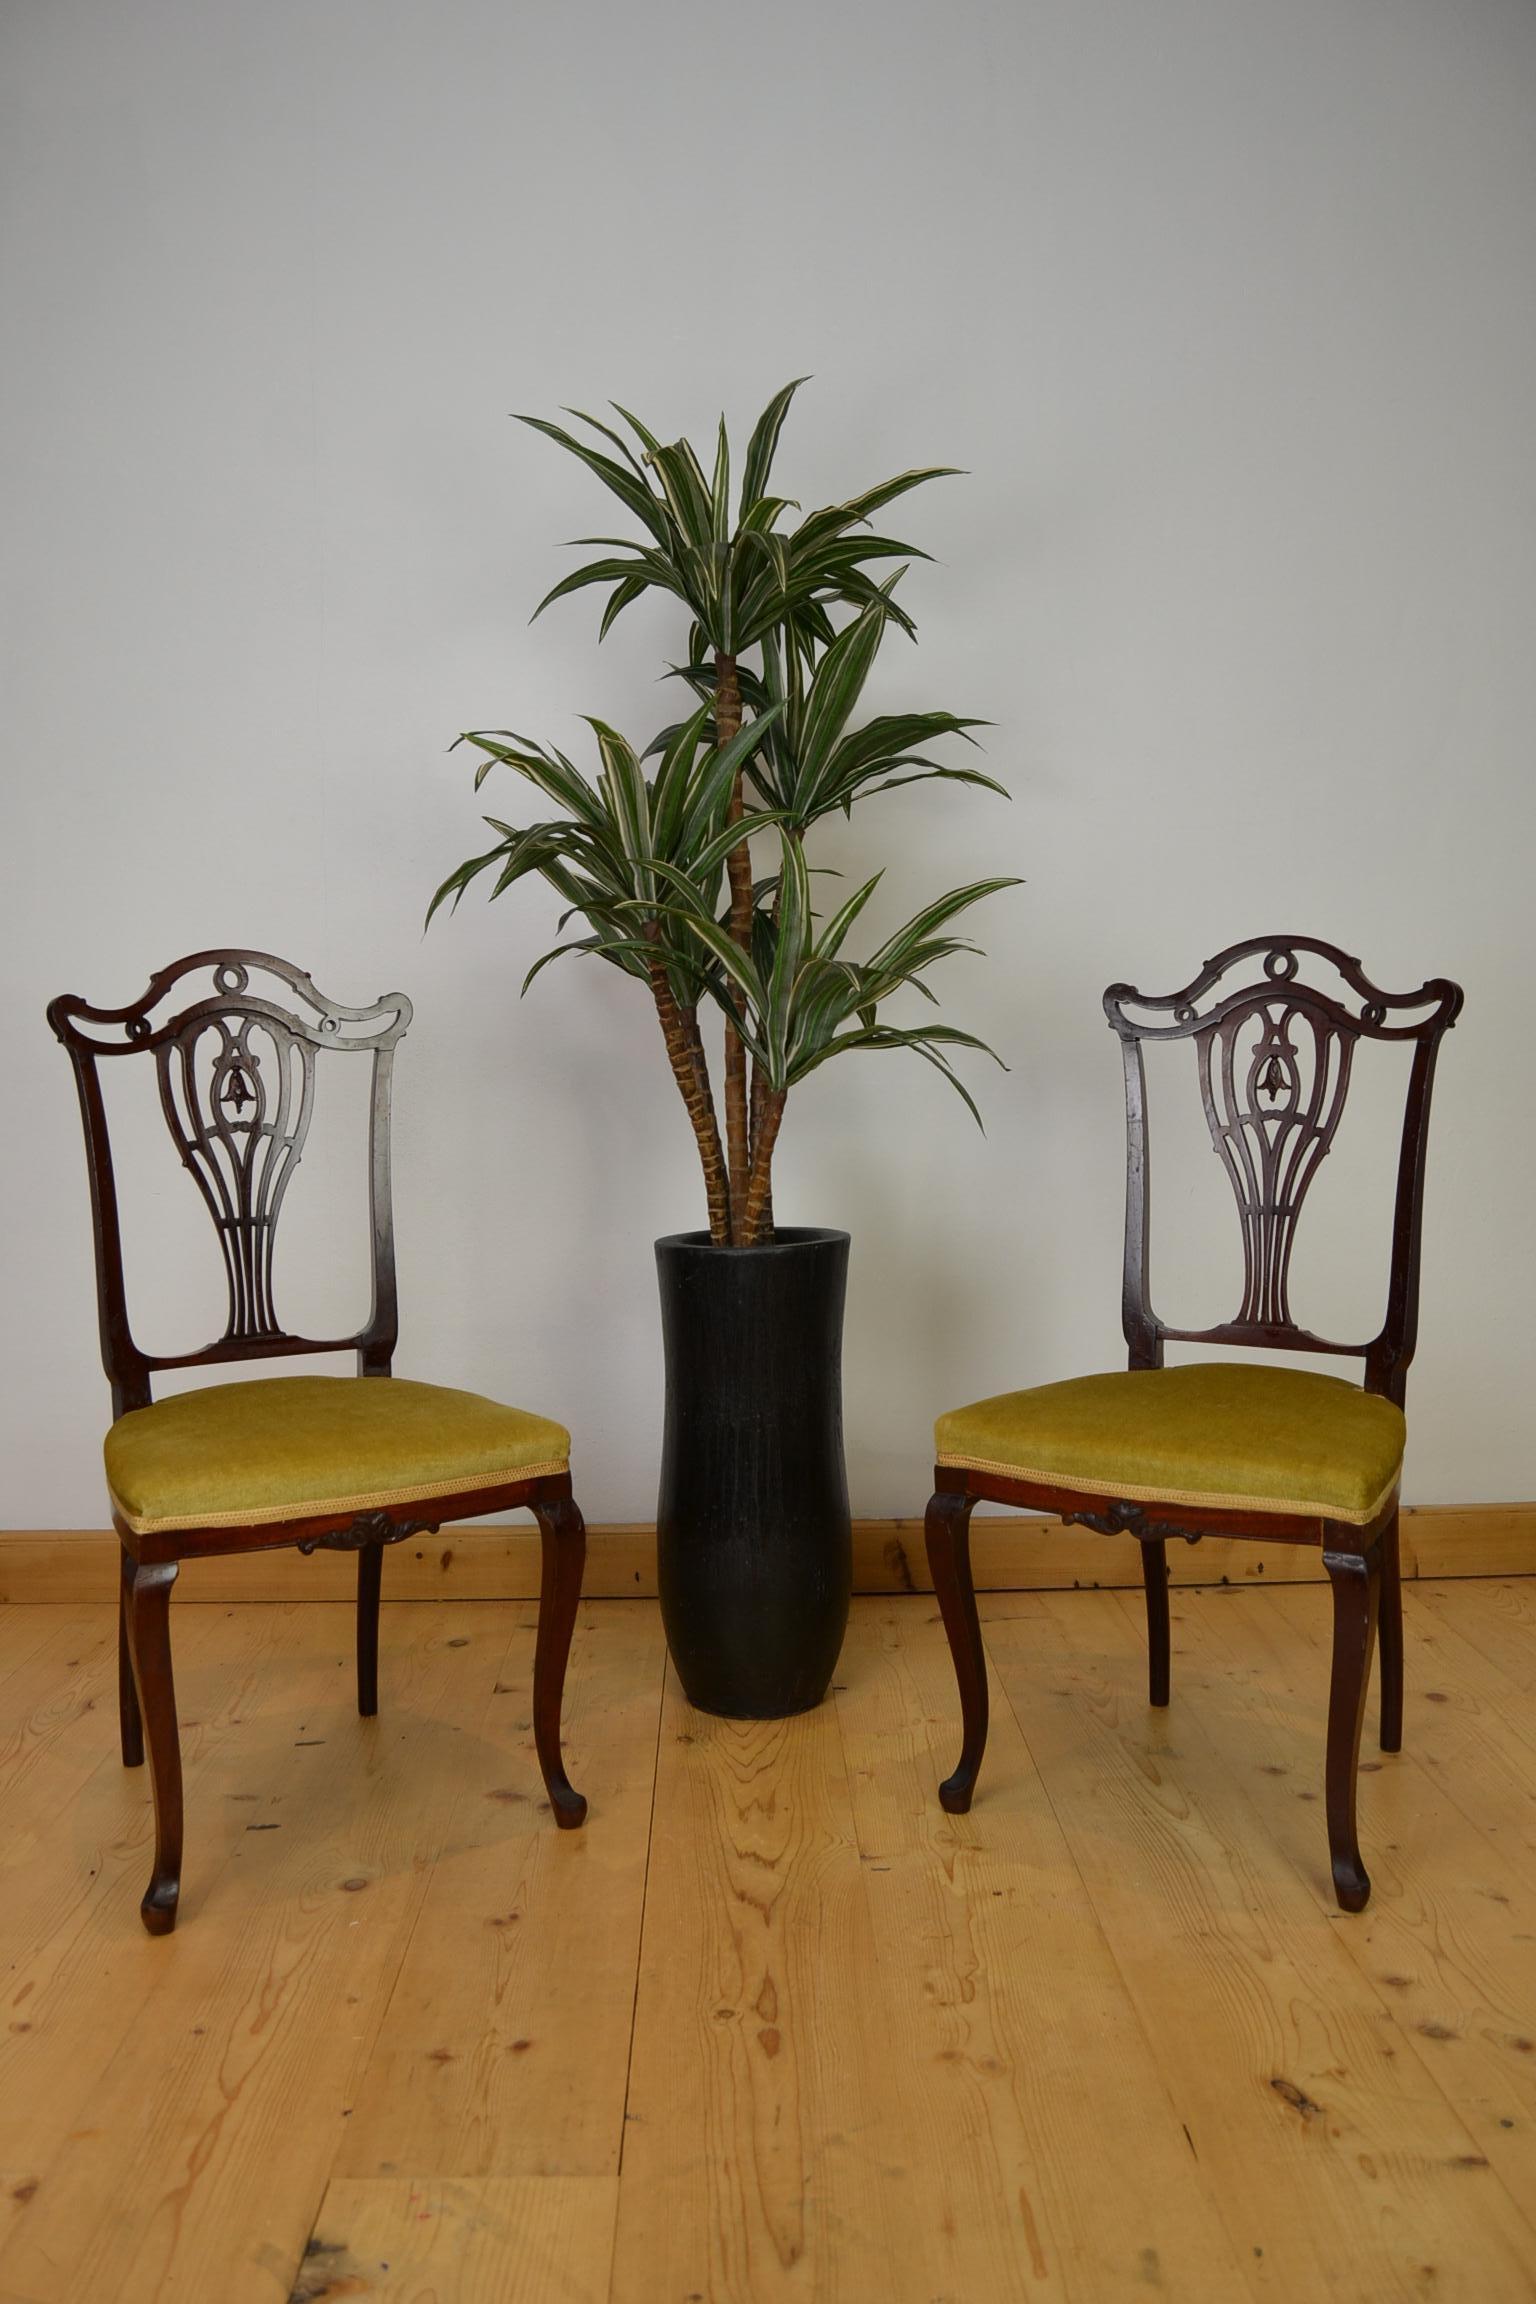 Paire de chaises d'appoint anciennes en acajou Pander & Zn de la fin du 19e siècle. Il s'agit d'une élégante paire de chaises d'appoint anciennes. 
Par Hollandia Pander et ses fils - marqué sous.
Ces chaises en provenance des Pays-Bas sont de style